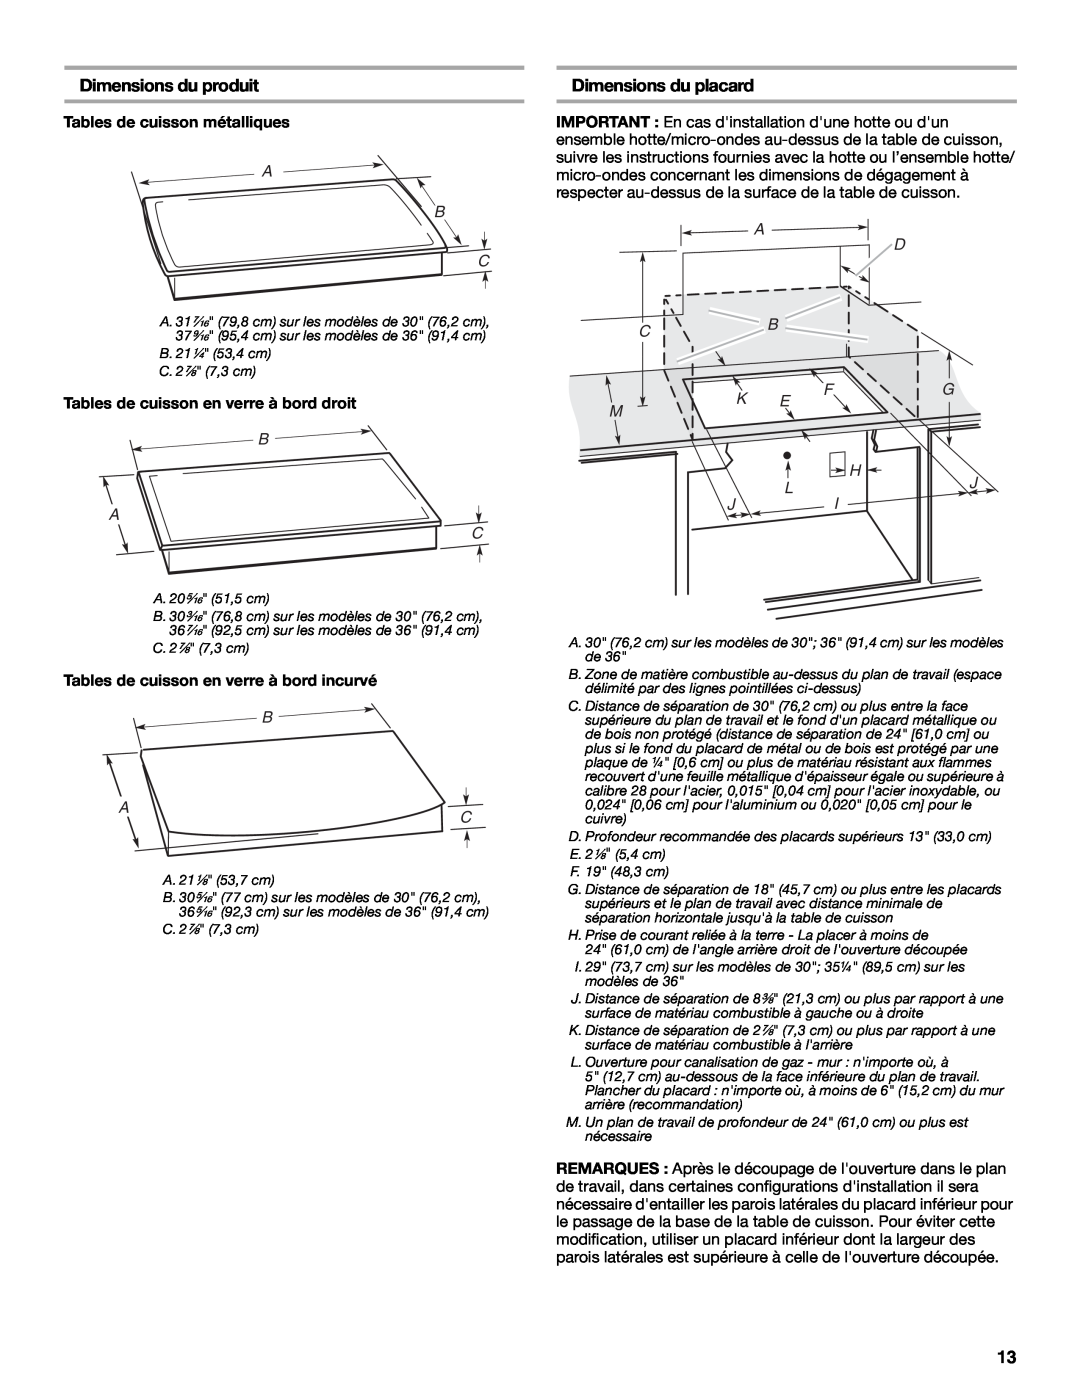 Whirlpool Gas Built-In Cooktop Dimensions du produit, Dimensions du placard, Tables de cuisson métalliques, A B C, A D Cb 